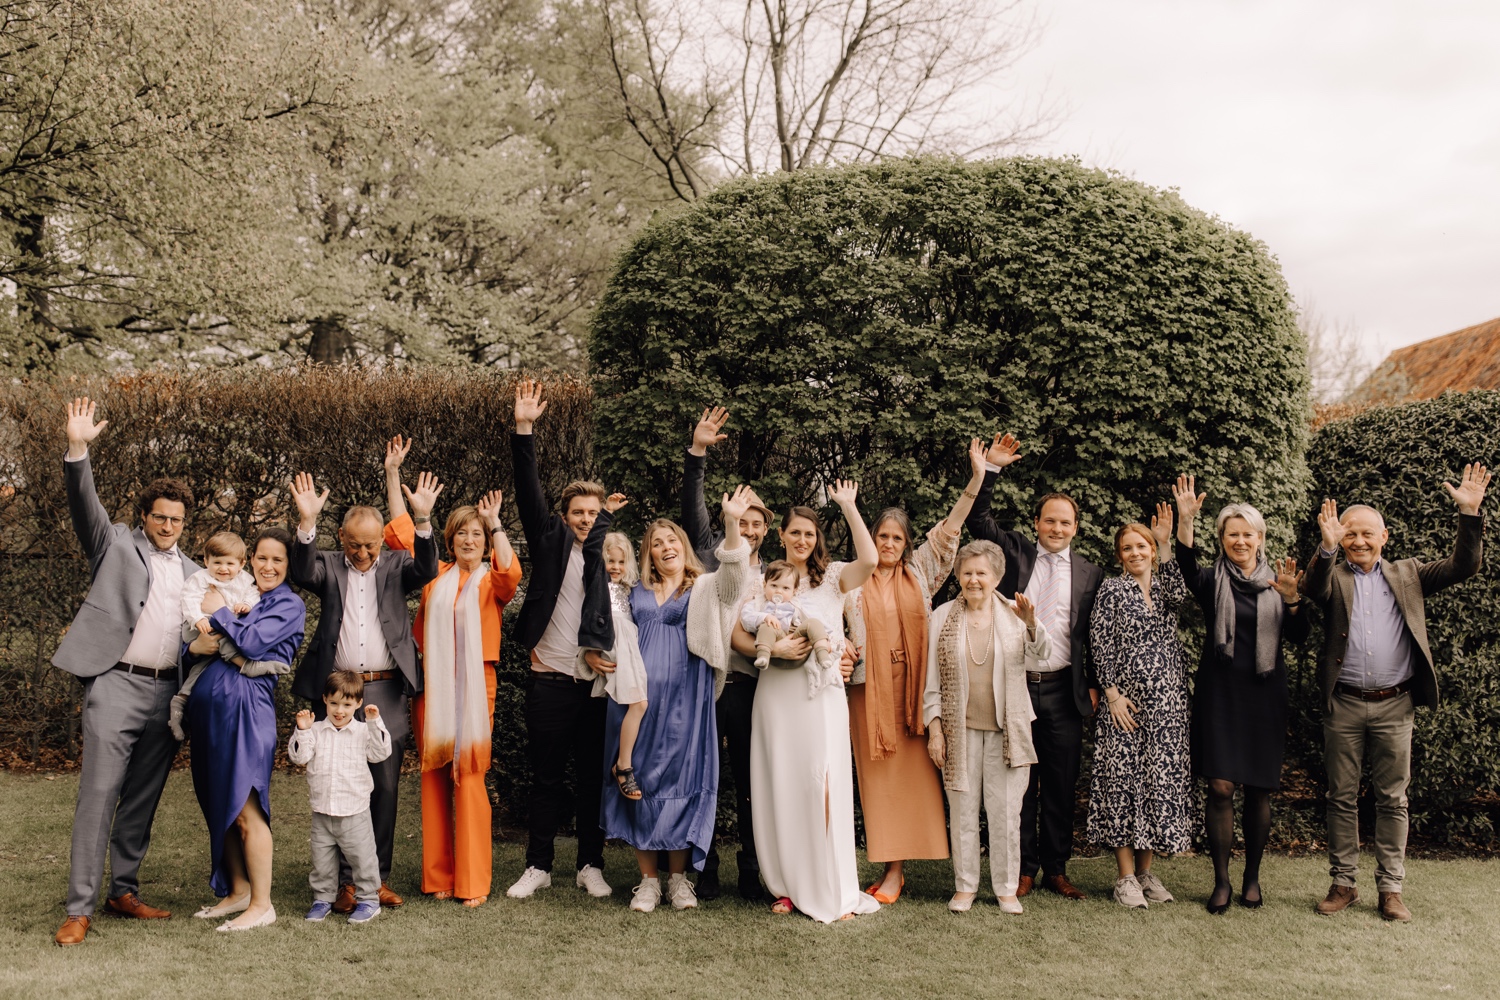 Huwelijksfotograaf Limburg - groepsfoto van bruidspaar met alle familieleden